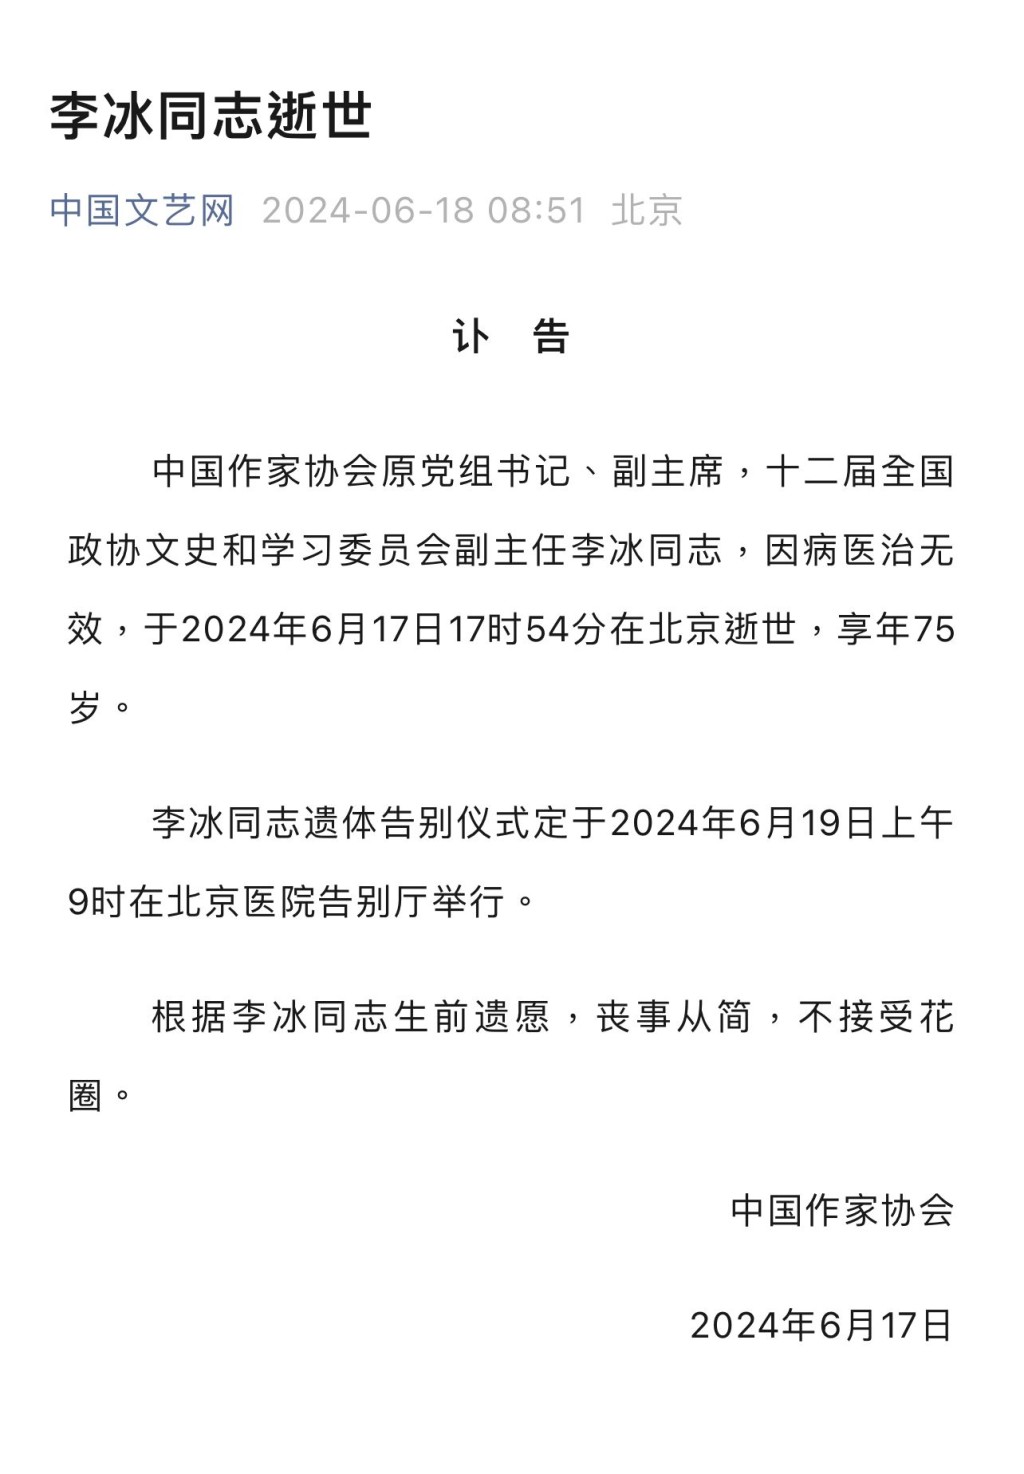 李冰遺體告別儀式定於6月19日上午9時在北京醫院告別廳舉行。